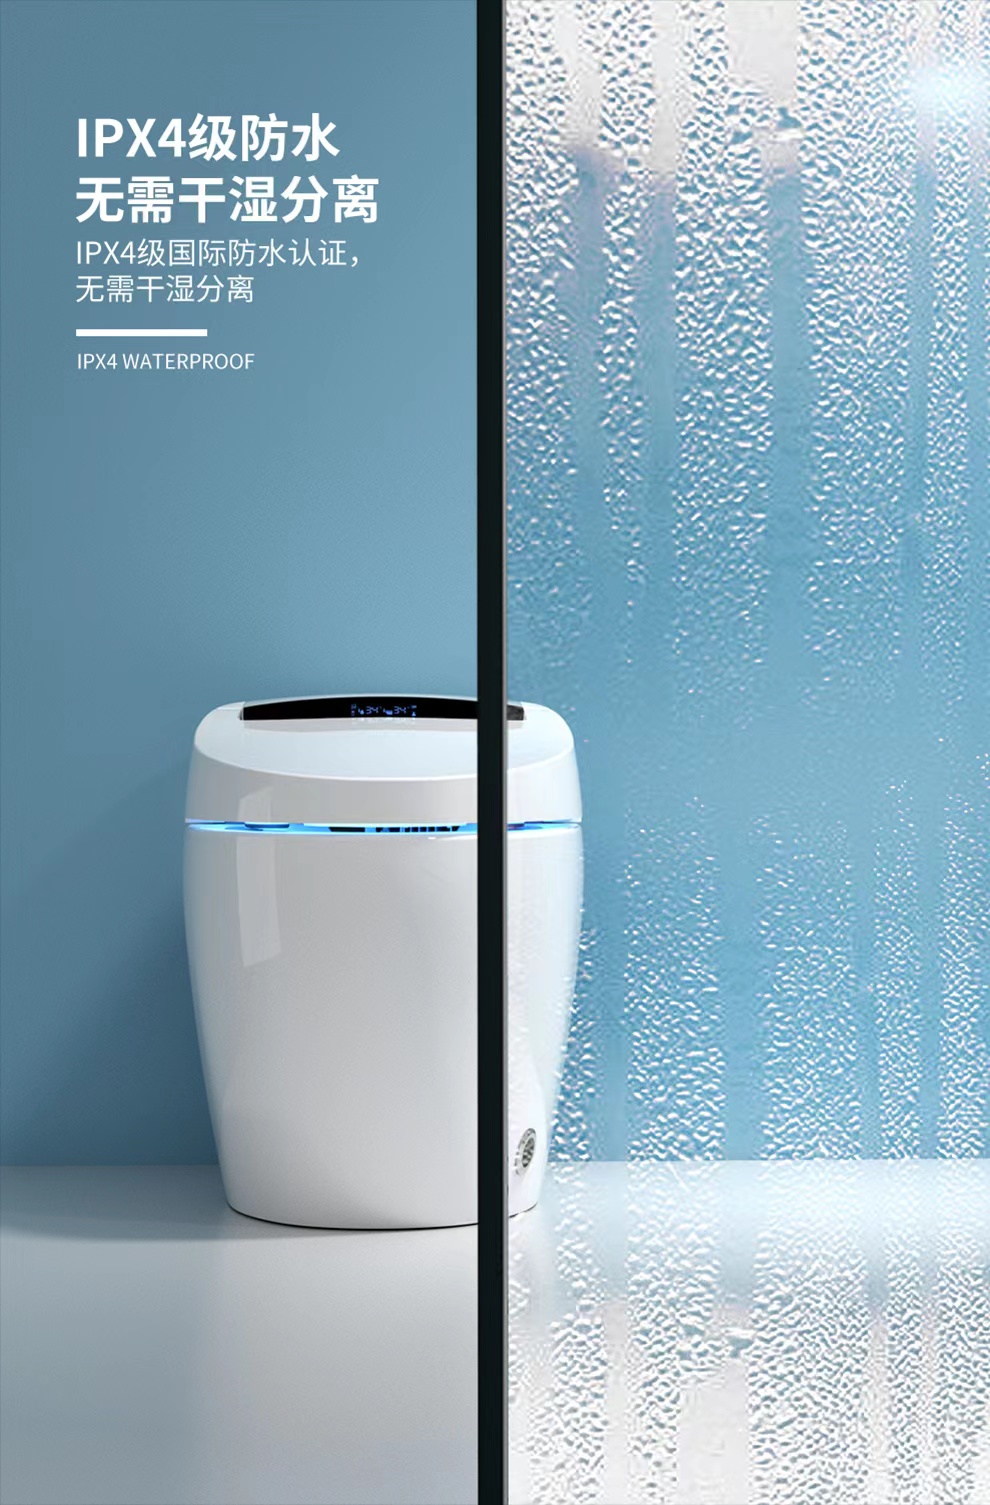 家用全自动智能马桶电动感应一体式坐便器北京天津包安装